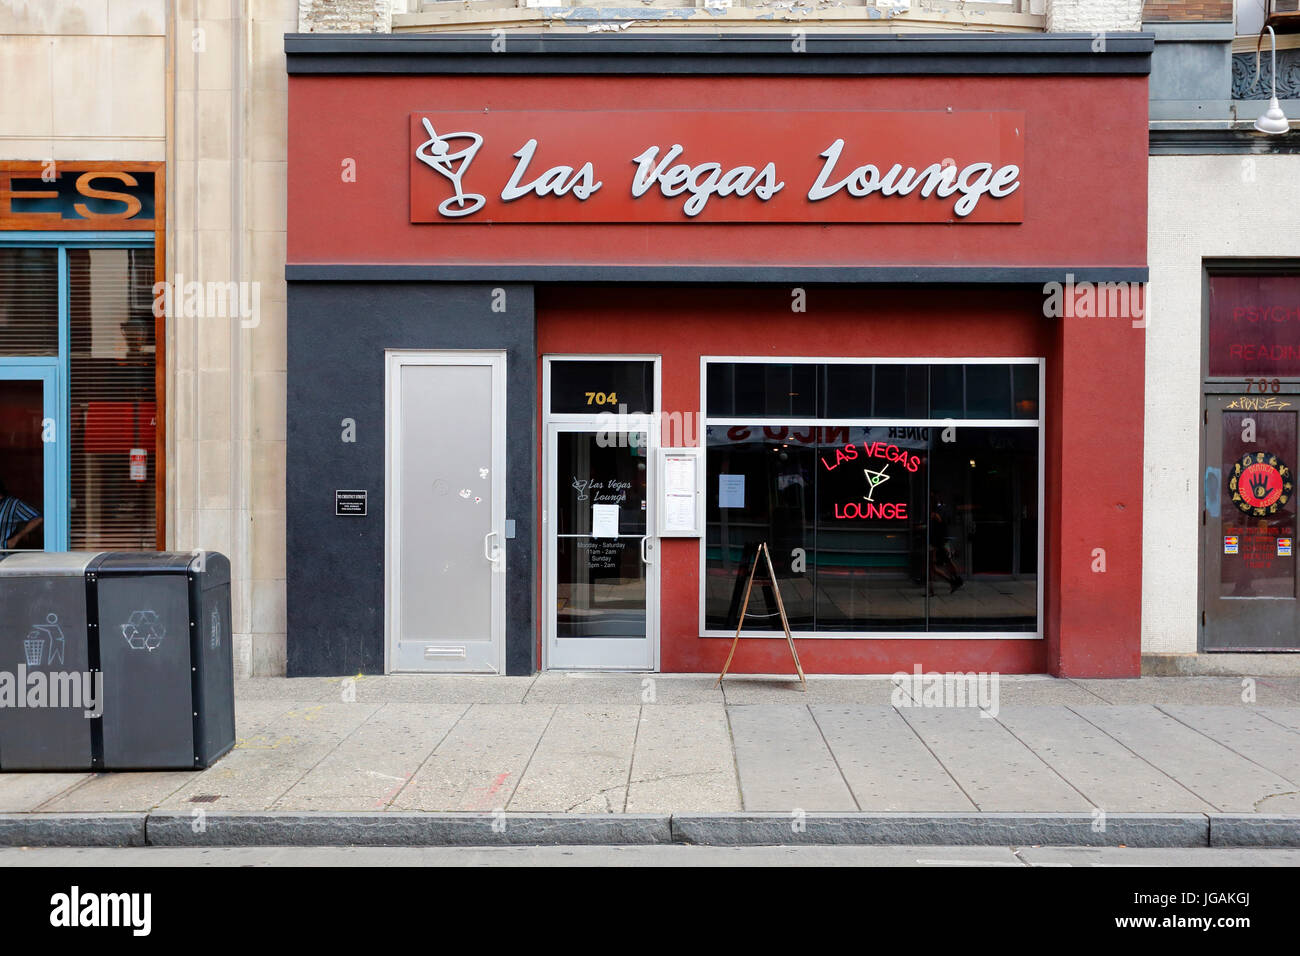 Las Vegas Lounge, 704 Chestnut St, Philadelphie, Pennsylvanie. Façade extérieure d'un bar en centre-ville Banque D'Images